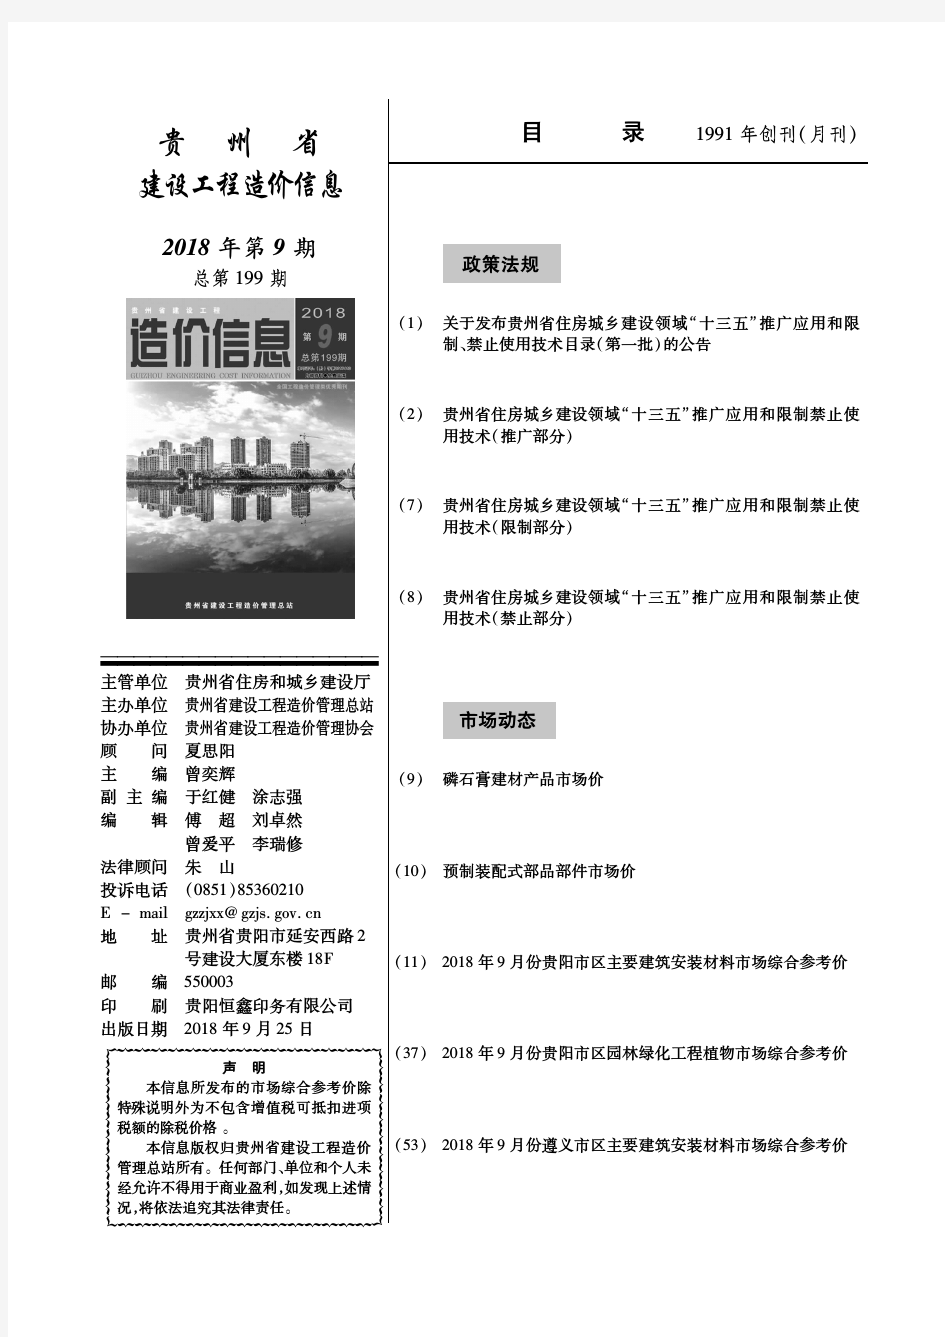 贵州省建设工程造价信息2018年第09期